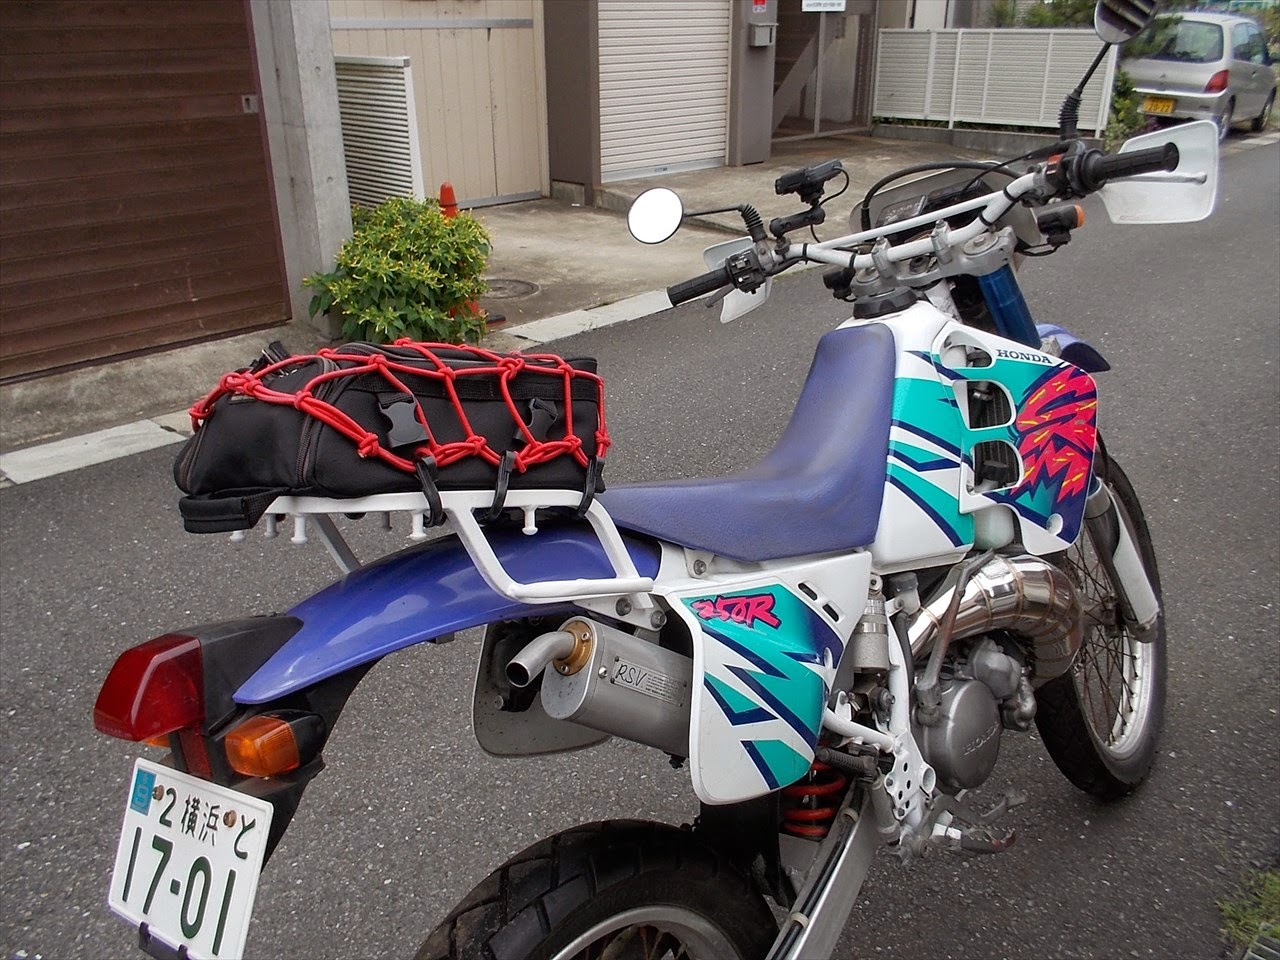 Blueskyfuji 年前の2ストロークバイク Crm250r横浜 甲府ツーリング